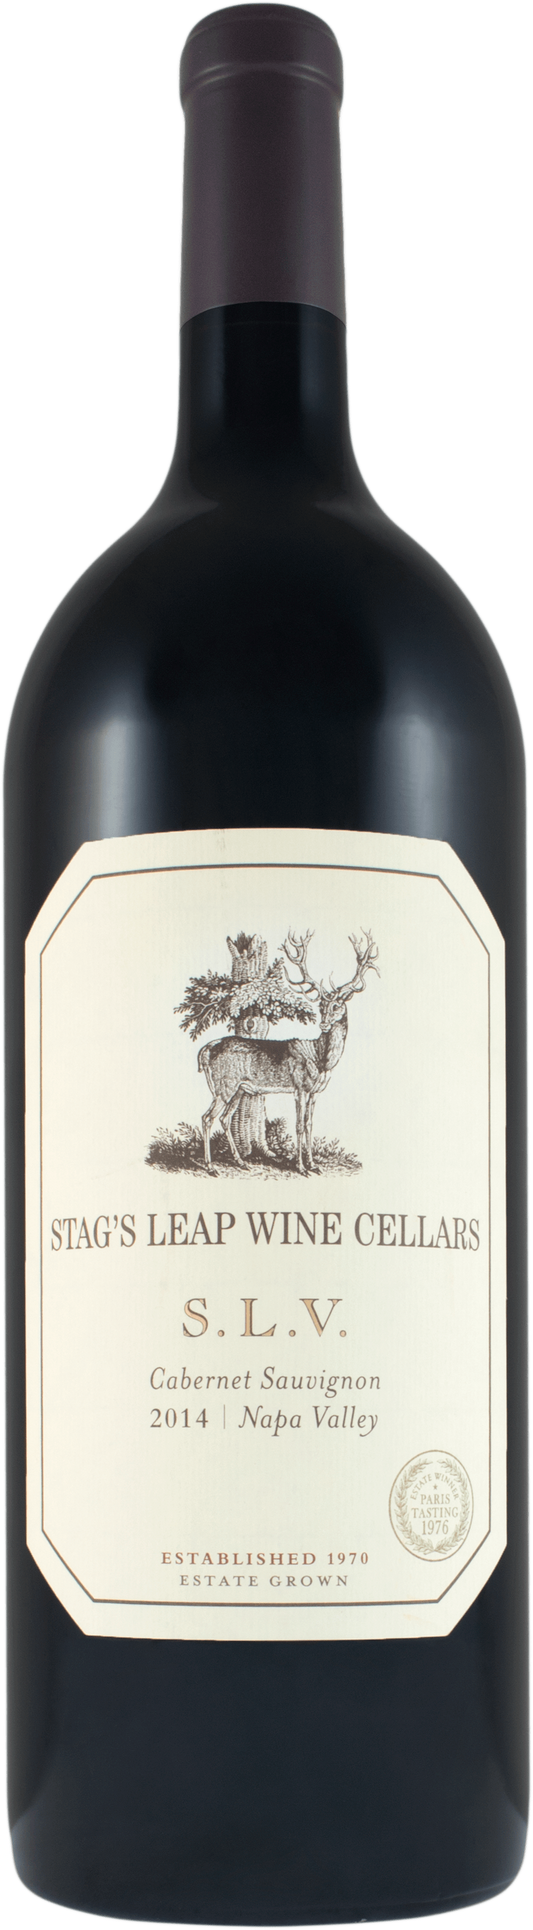 Stag's Leap Wine Cellars SLV Cabernet Sauvignon 2005 (1x300cl) - TwoMoreGlasses.com